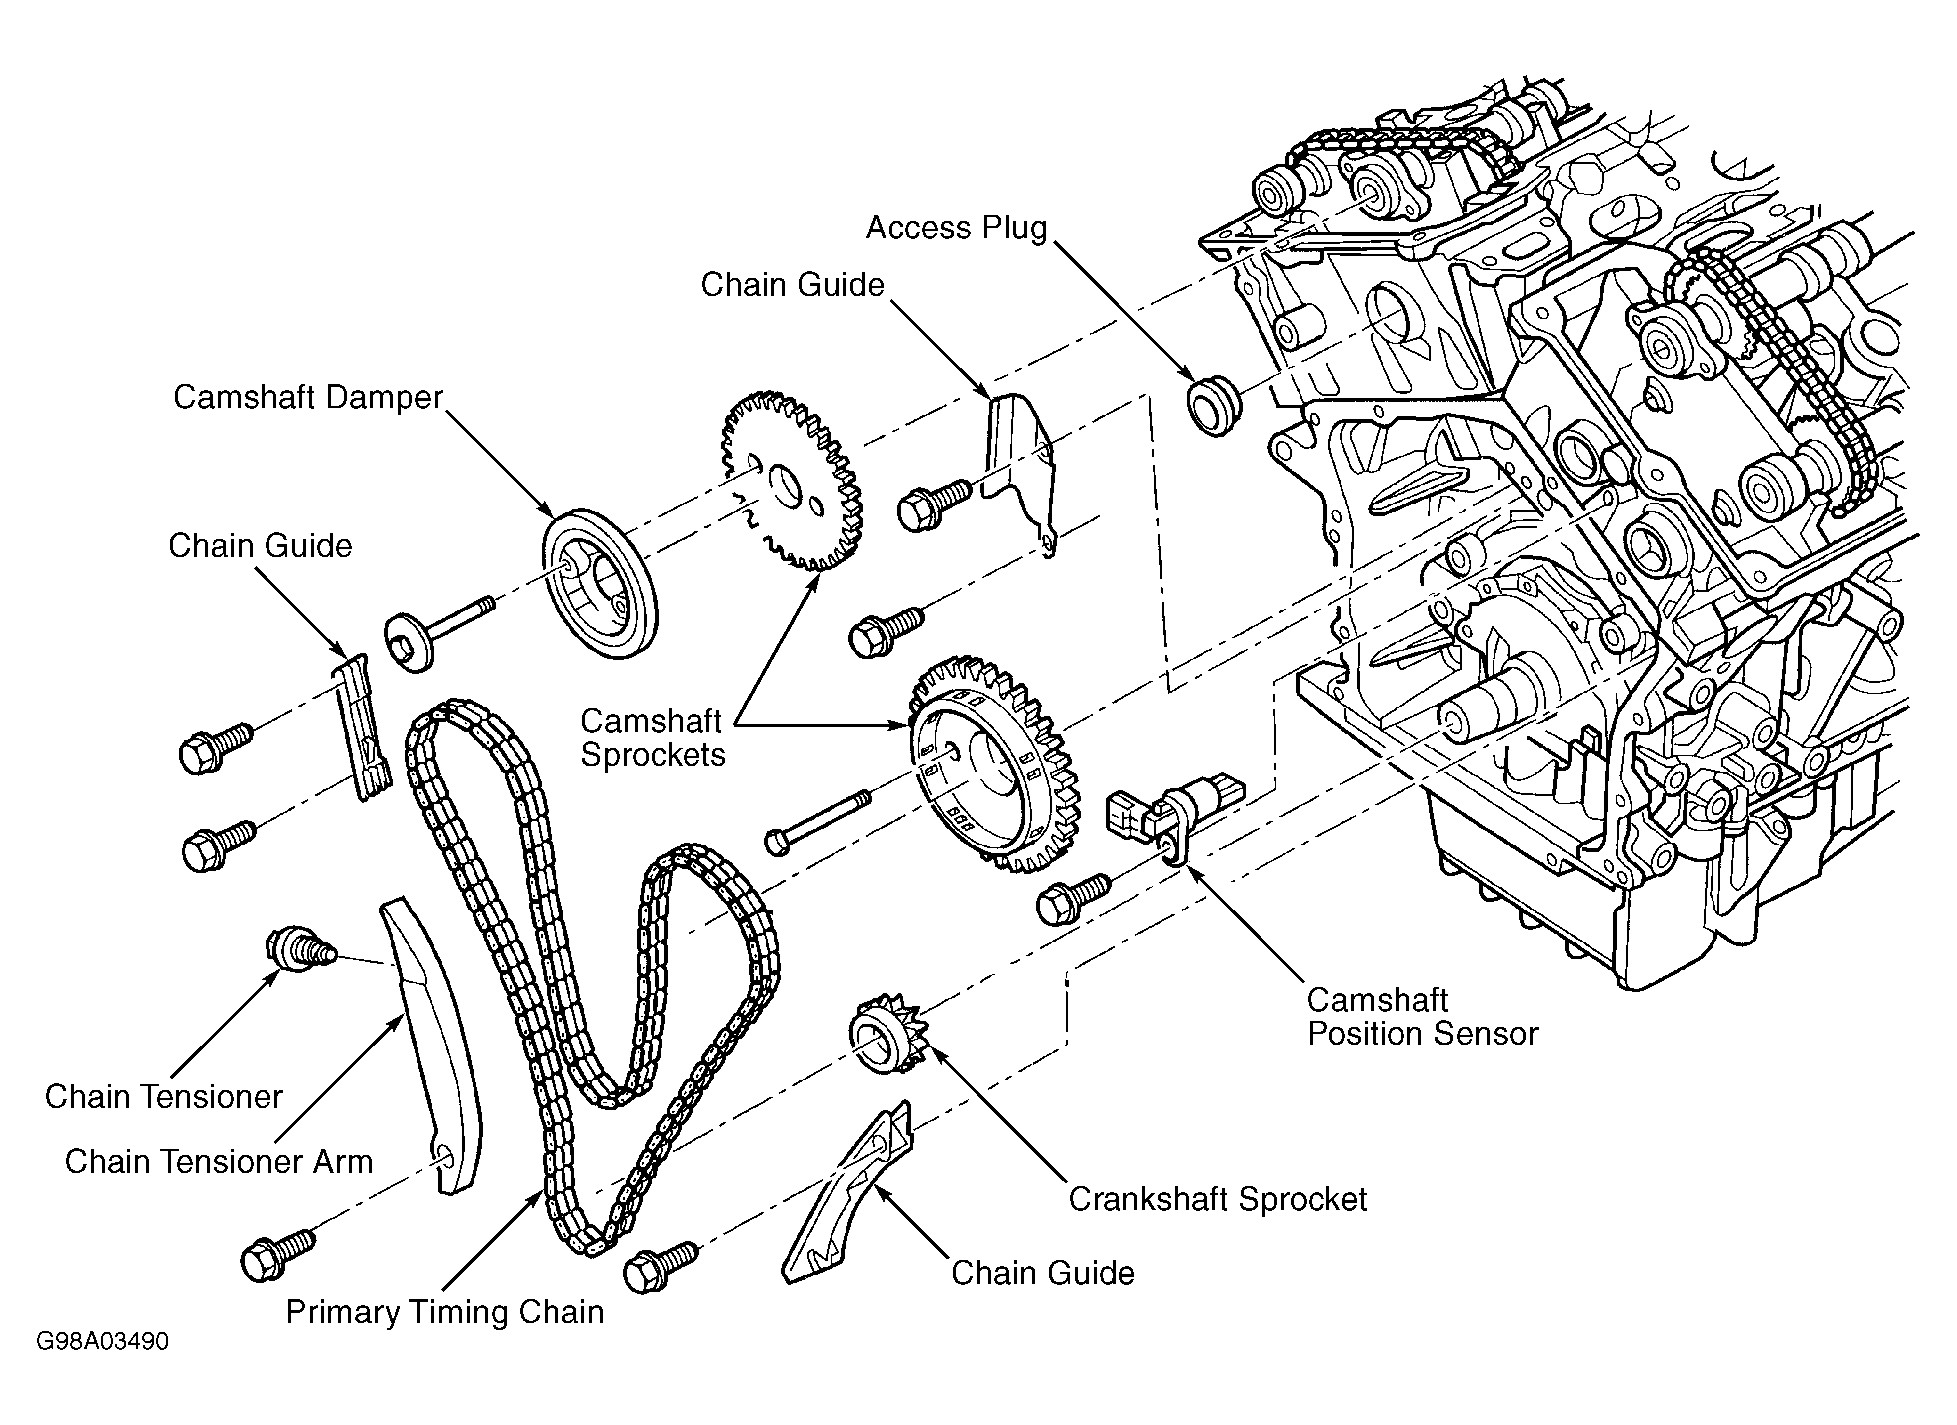 2000 Dodge Intrepid 2 7 Engine Diagram 2 Chrysler 2 7 Engine Timing Marks Of 2000 Dodge Intrepid 2 7 Engine Diagram 2